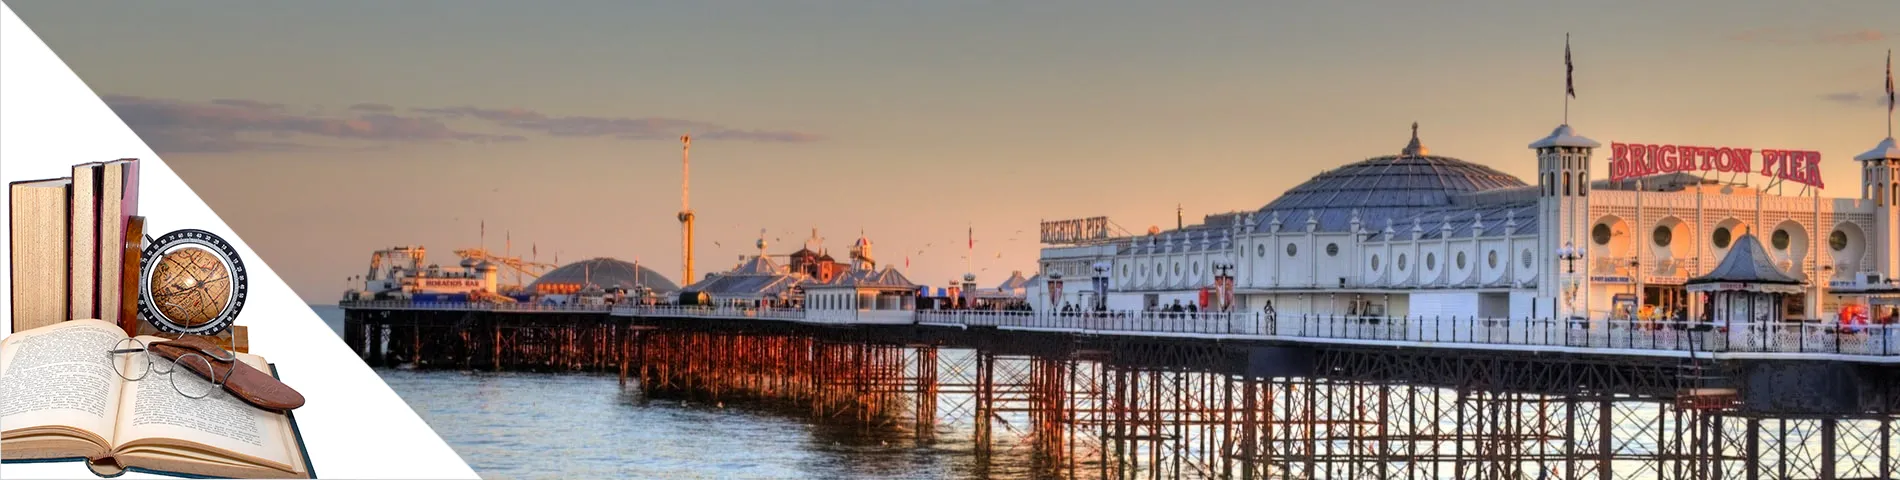 Brighton - Inglese & Letteratura